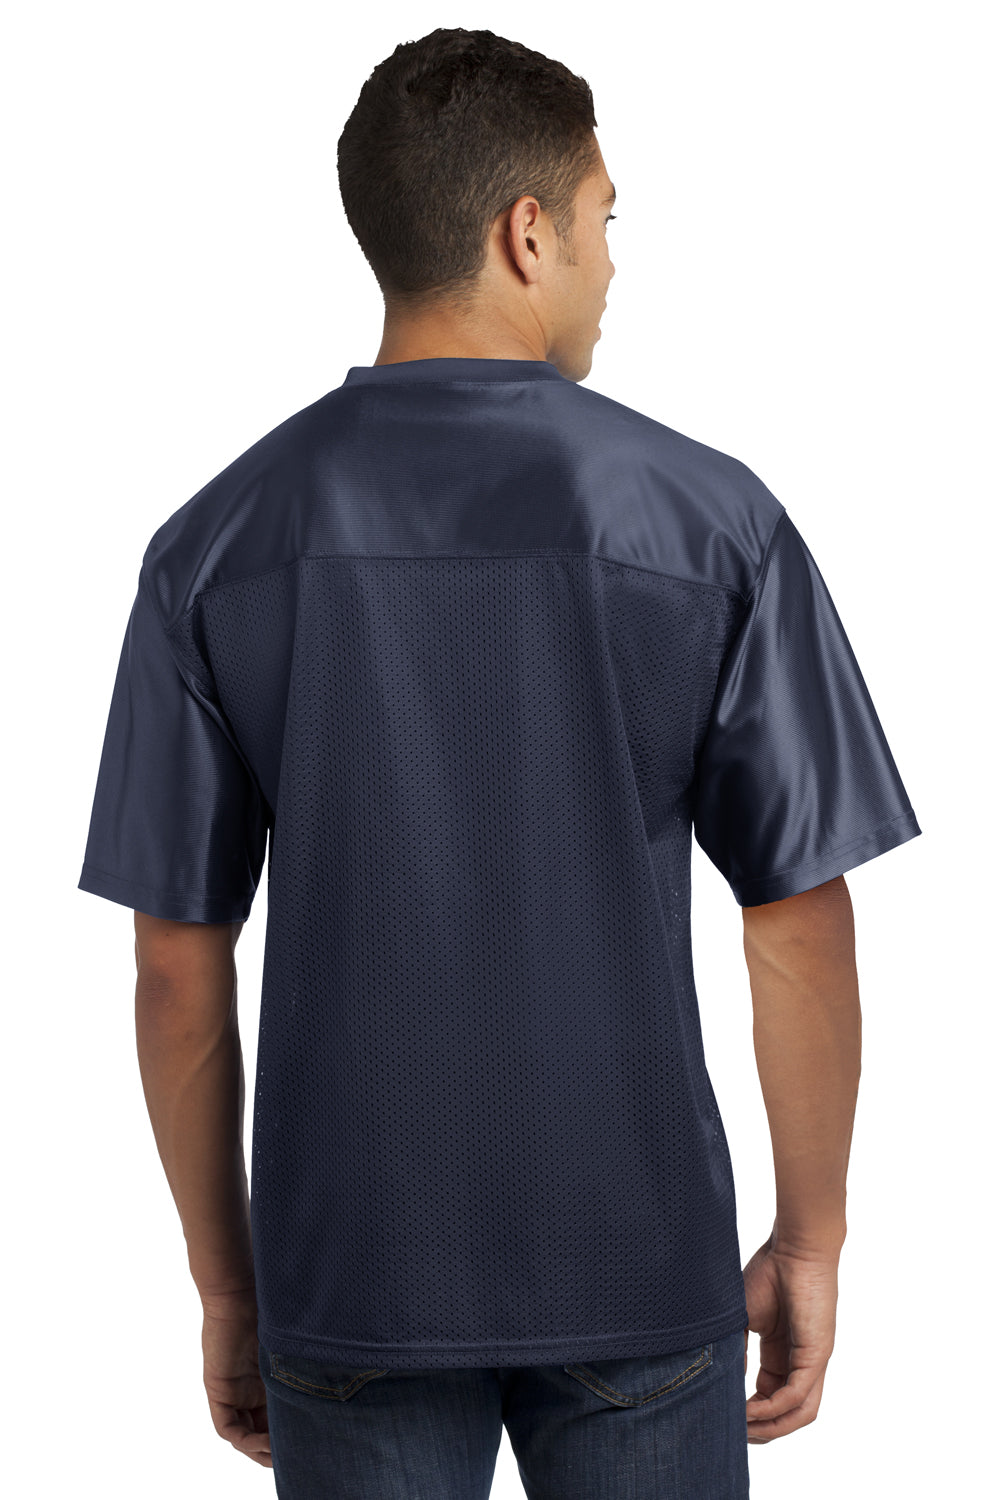 Sport-Tek ST307 Mens Short Sleeve V-Neck T-Shirt Navy Blue Back